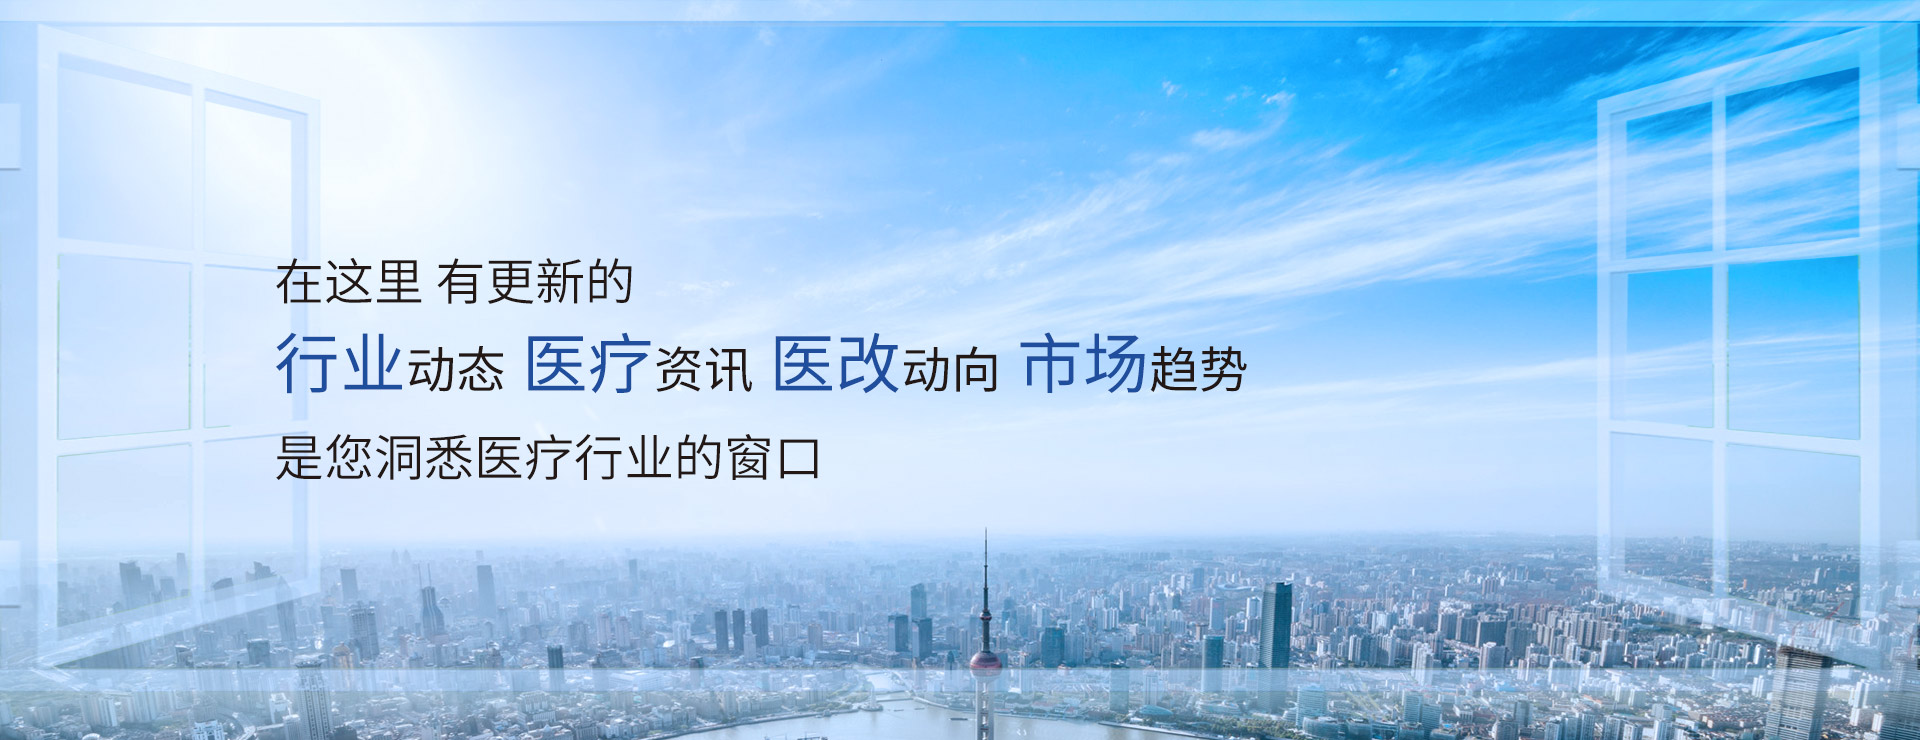 热烈庆祝北京诚济制药荣获“顺义区创新创业型小巨人企业”称号